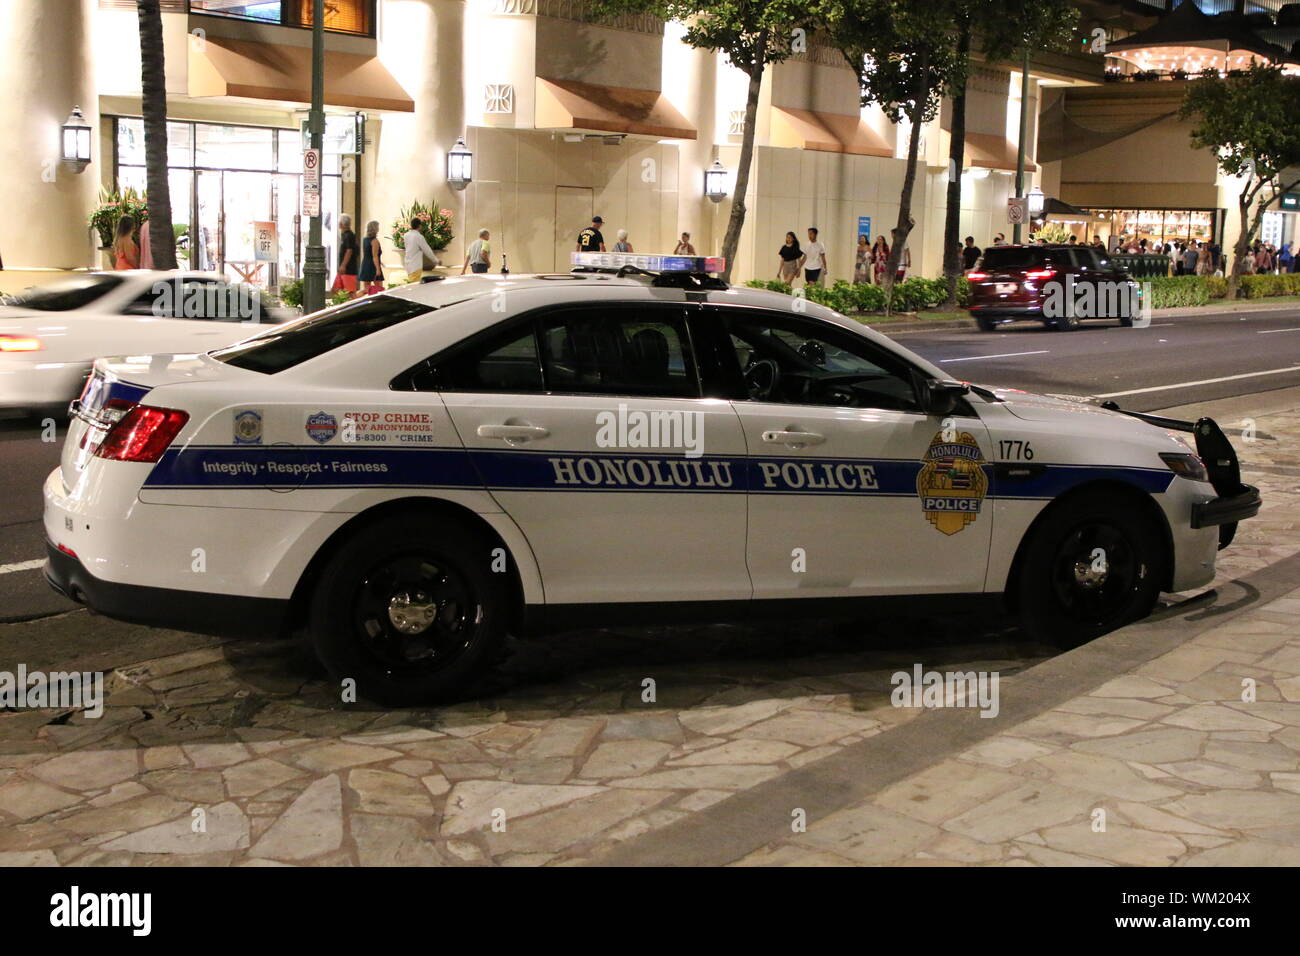 Police car in Honolulu Hawaii, in Waikiki Beach Stock Photo